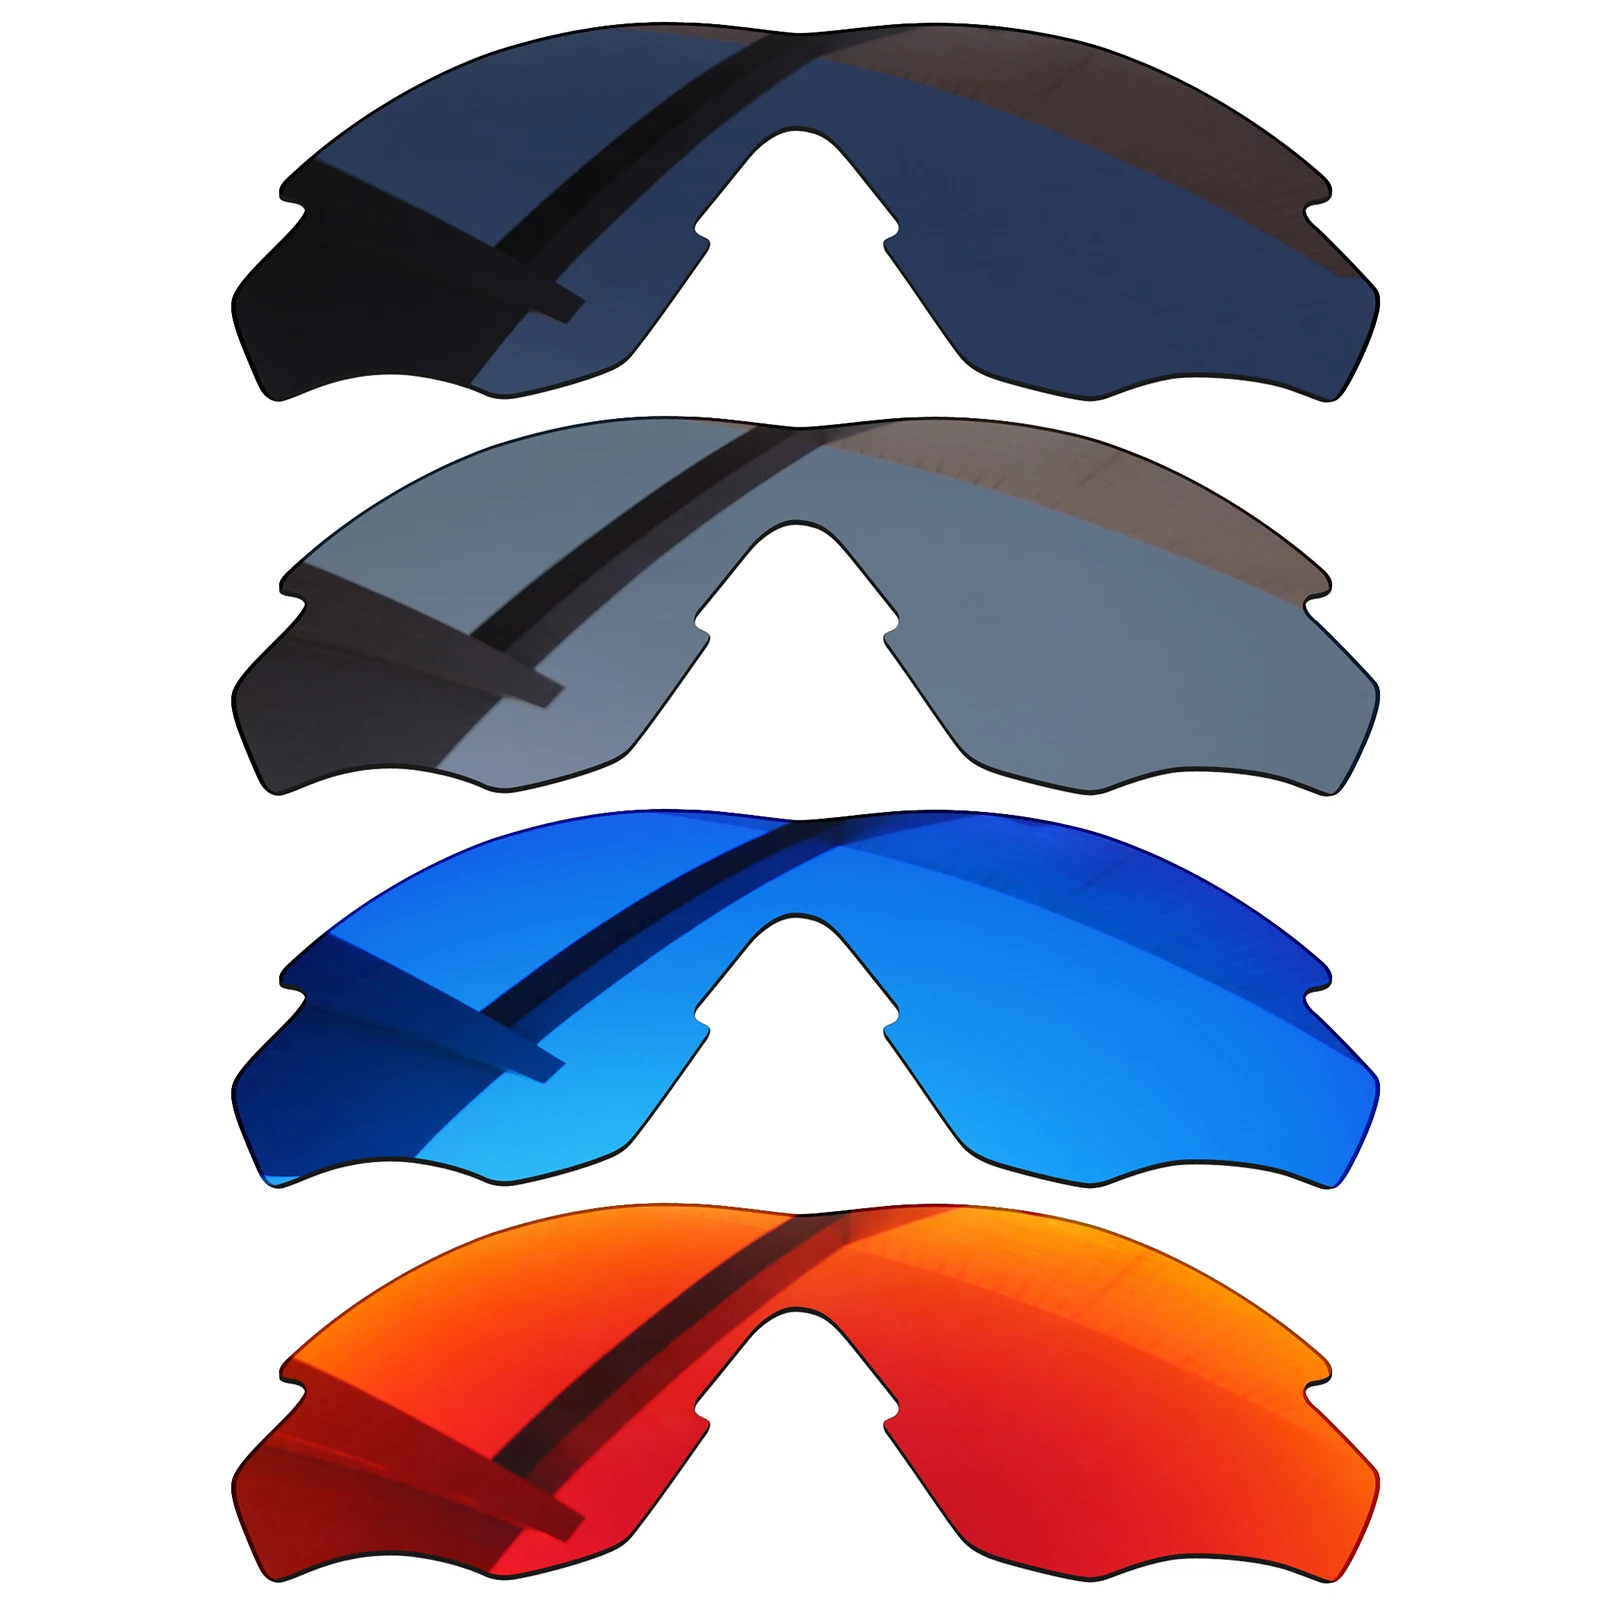 Alphax-lentes polarizadas de repuesto para coche, lentes de color negro, cielo de invierno y plata, gris y rojo, para montura de roble M2, OO9212, 4 piezas